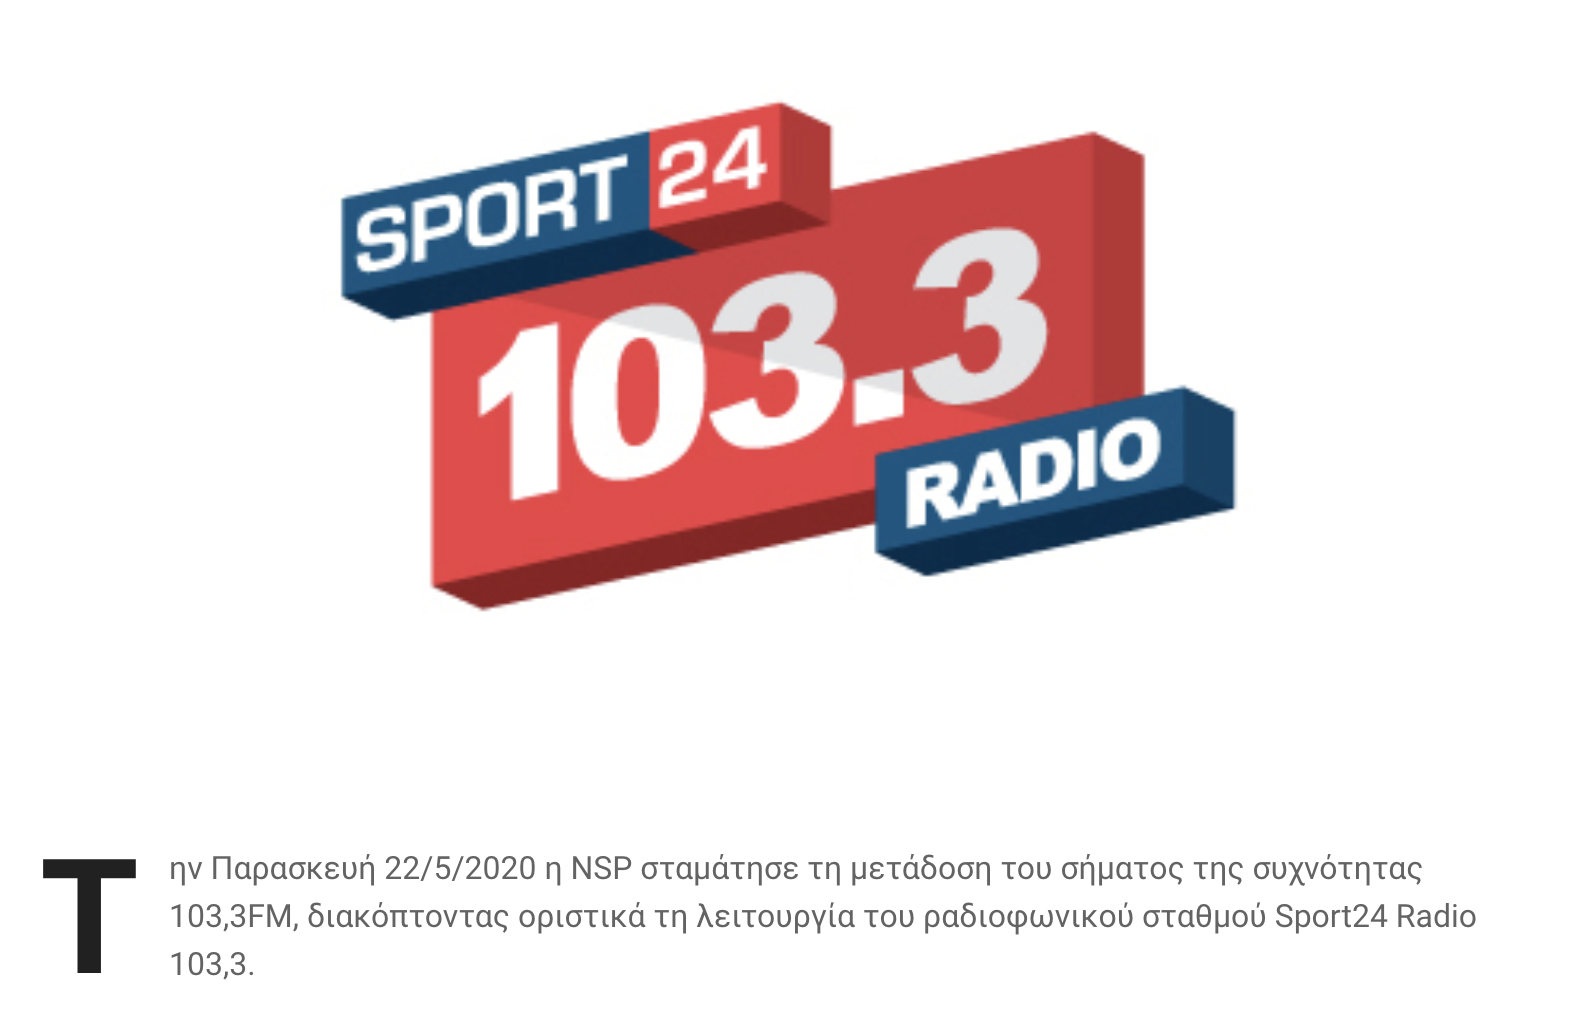 Οριστικό φινάλε για τον Sport24 Radio